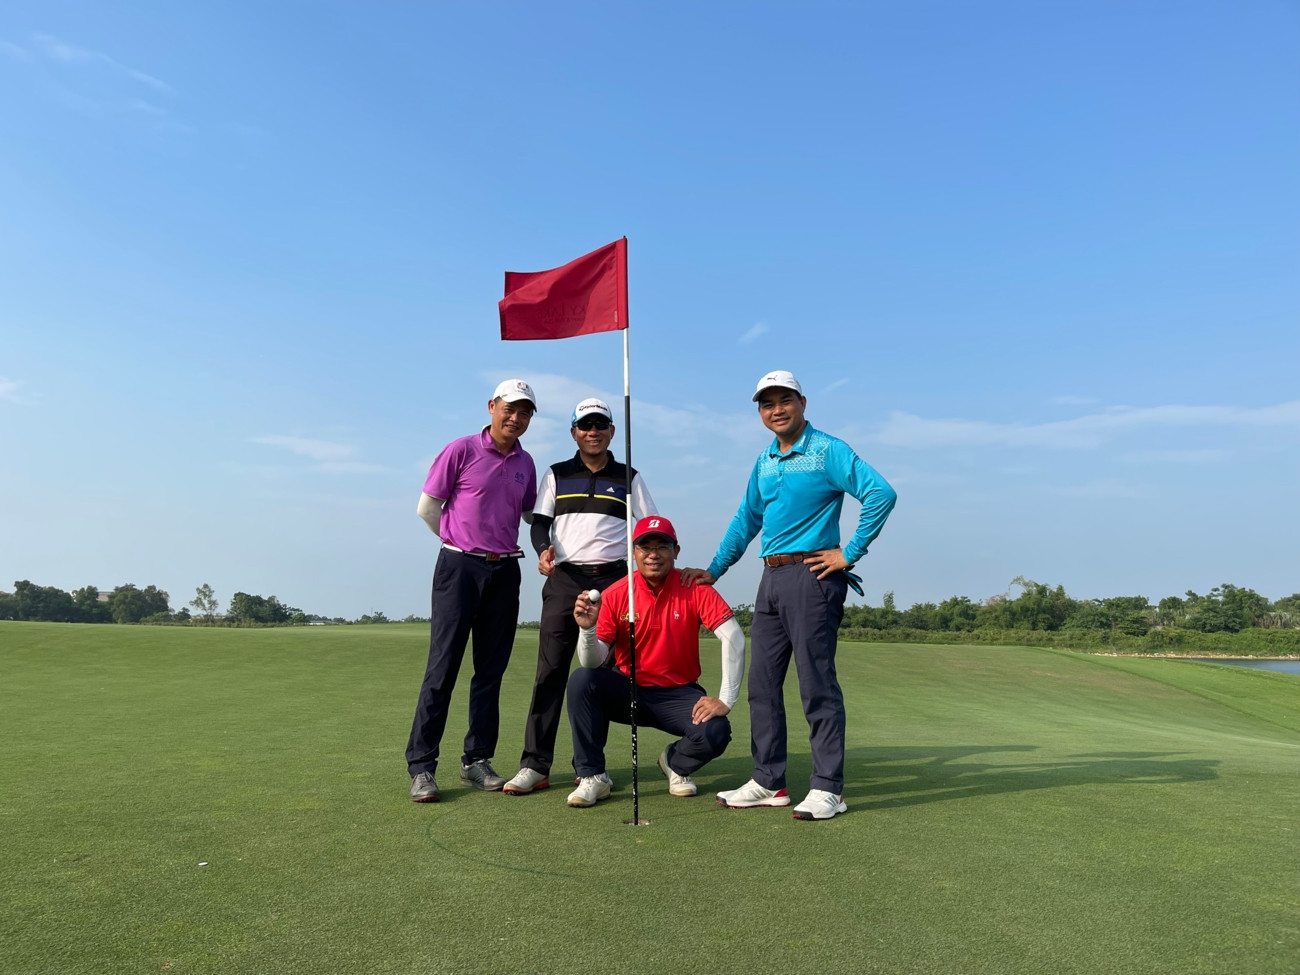 Golfer Phạm Lê Cường trúng giải thưởng 100 triệu đồng đến từ gói Dịch vụ giải thưởng HIO của VGS Sport - Ảnh 1.